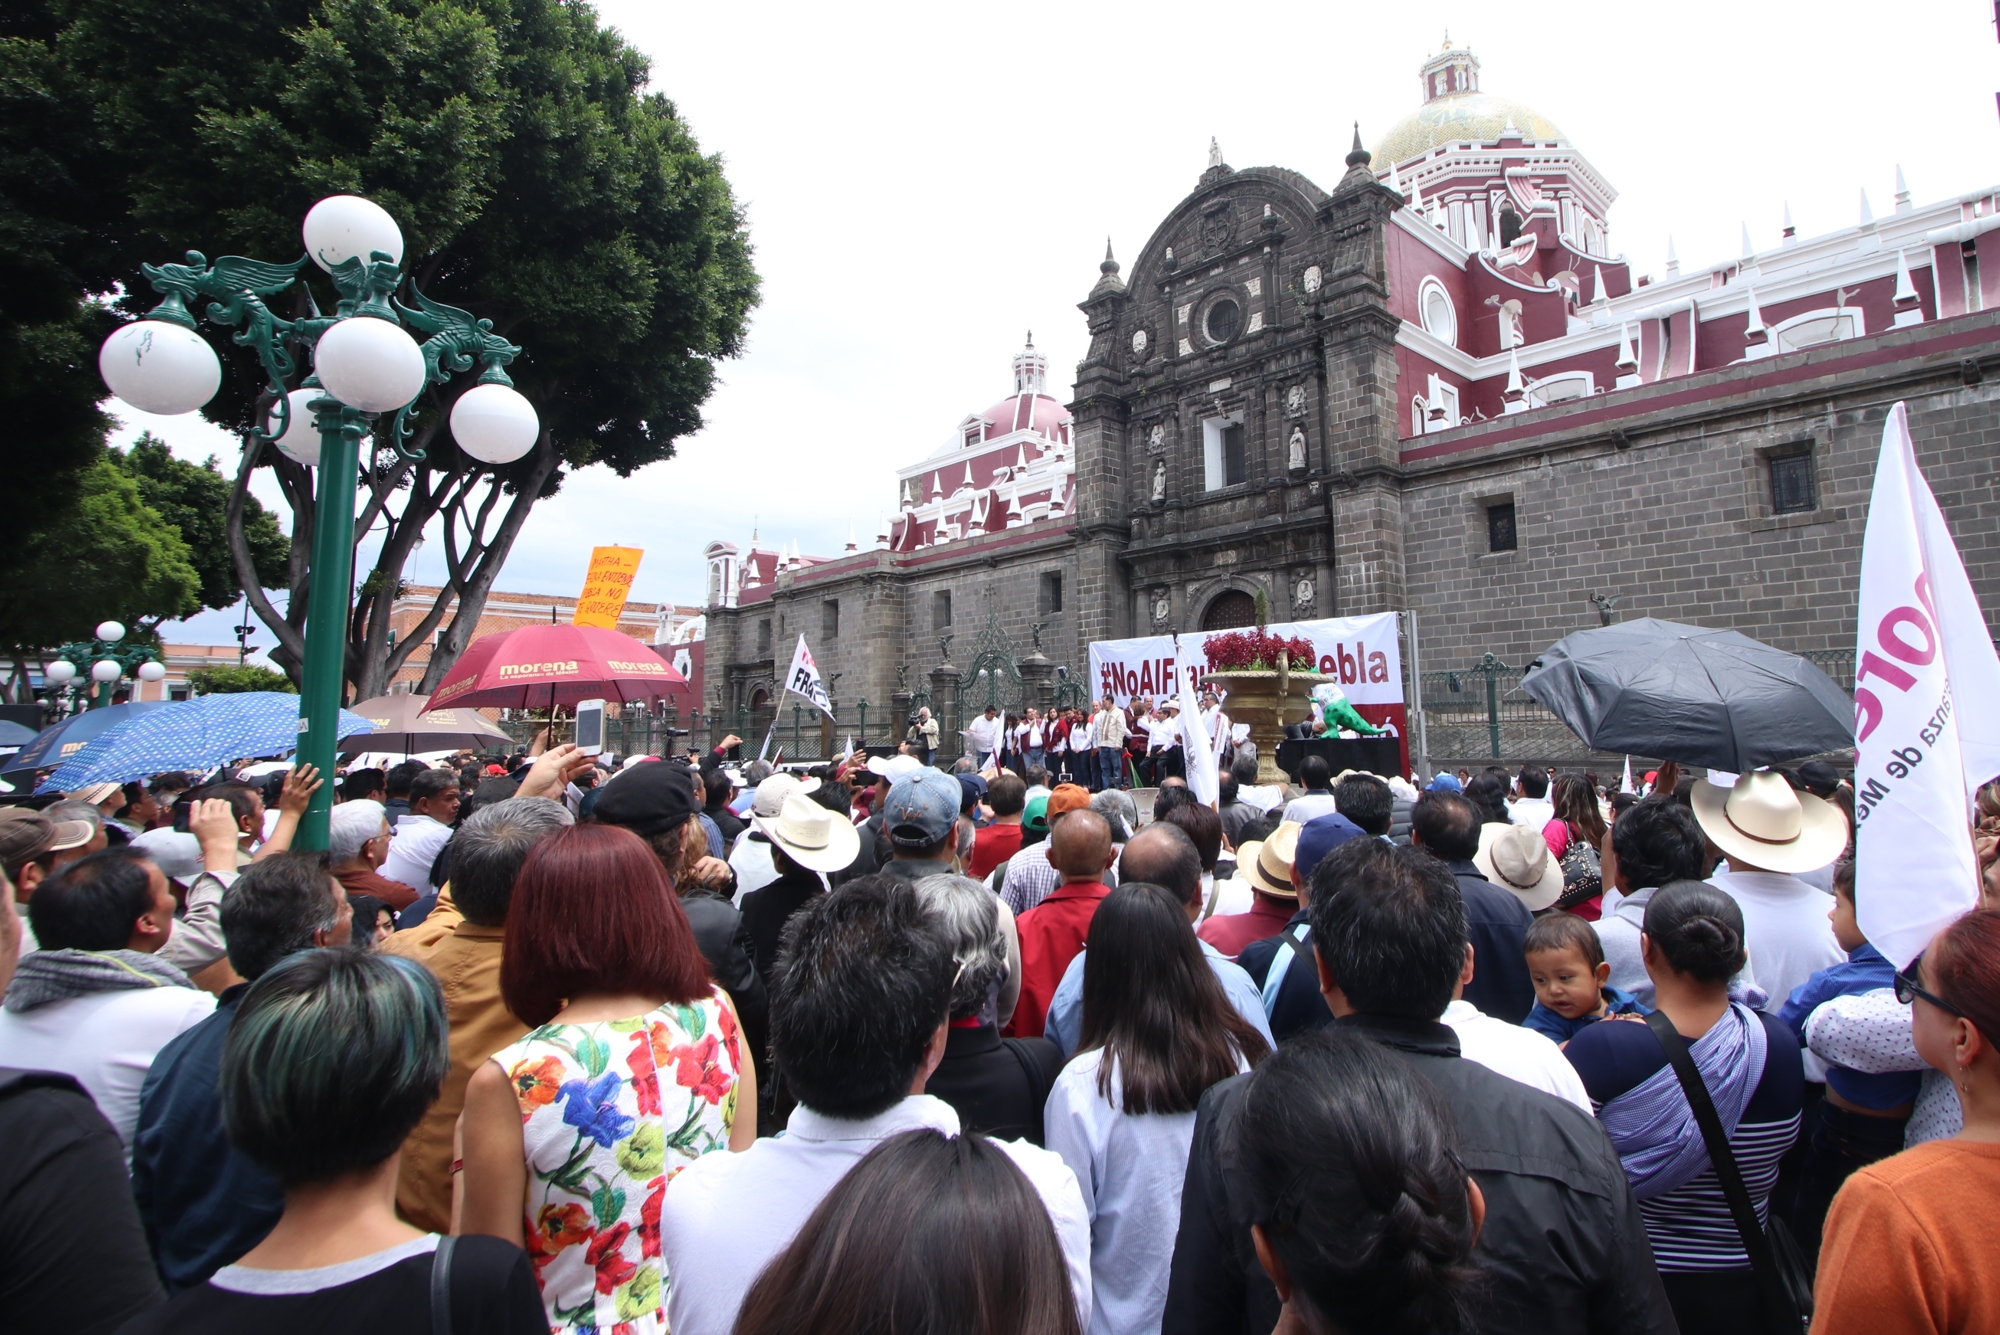 VIDEO: AMLO respalda la impugnación en Puebla: Polevnsky